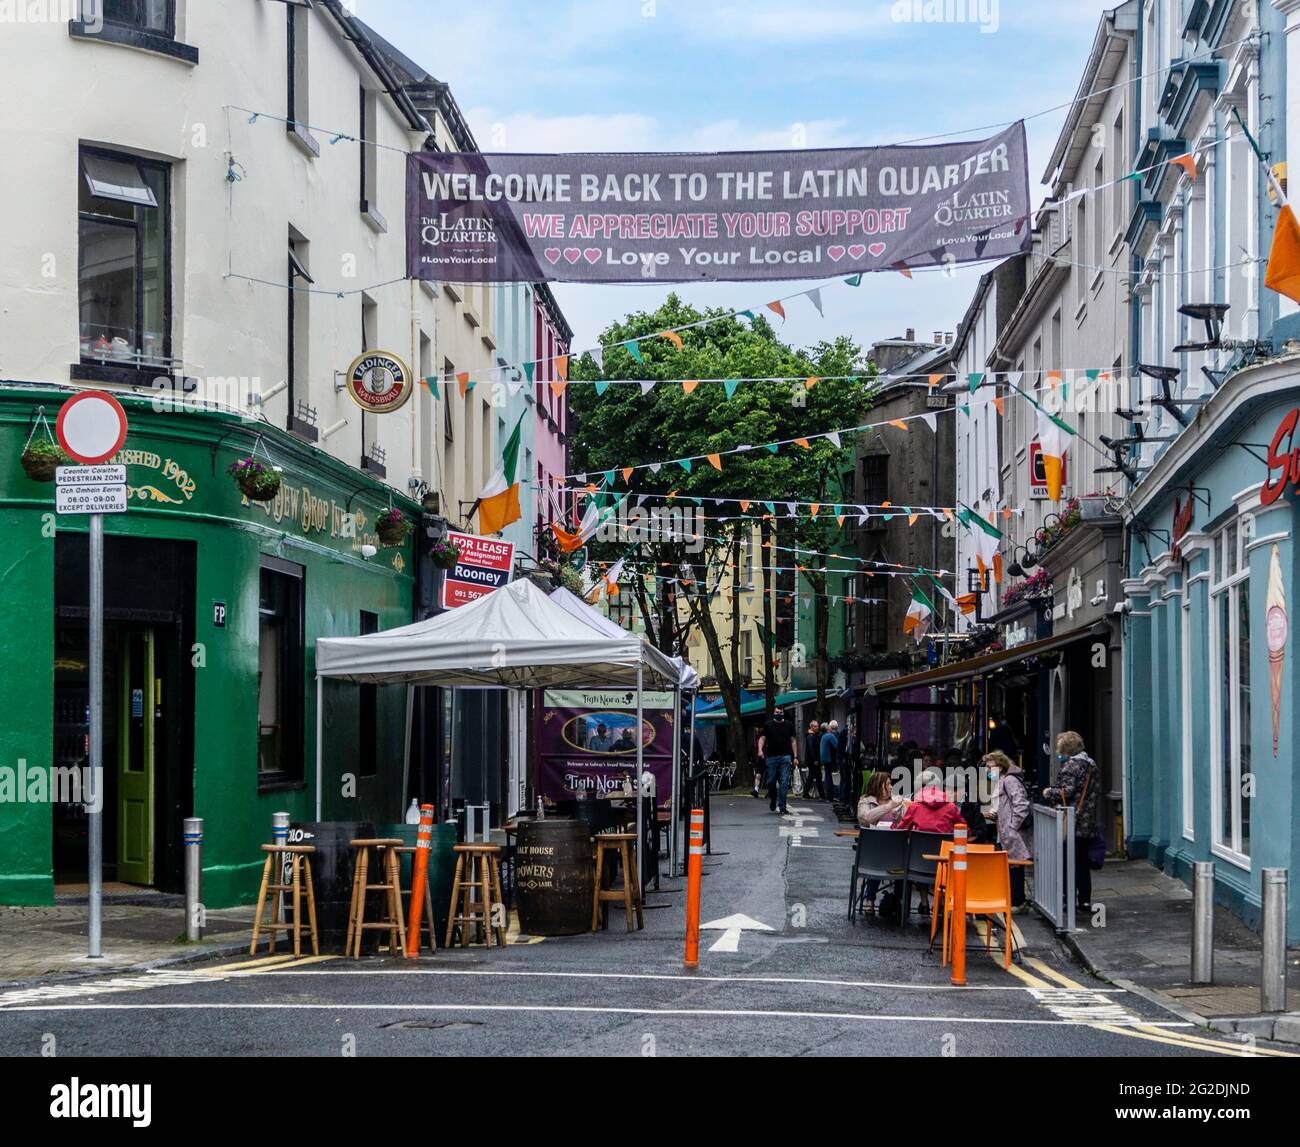 Cena al aire libre en el Barrio Latino en la ciudad de Galway, Irlanda. Una parte medieval de la ciudad, ahora se excluye el tráfico para fomentar la hospitalidad al aire libre. Foto de stock